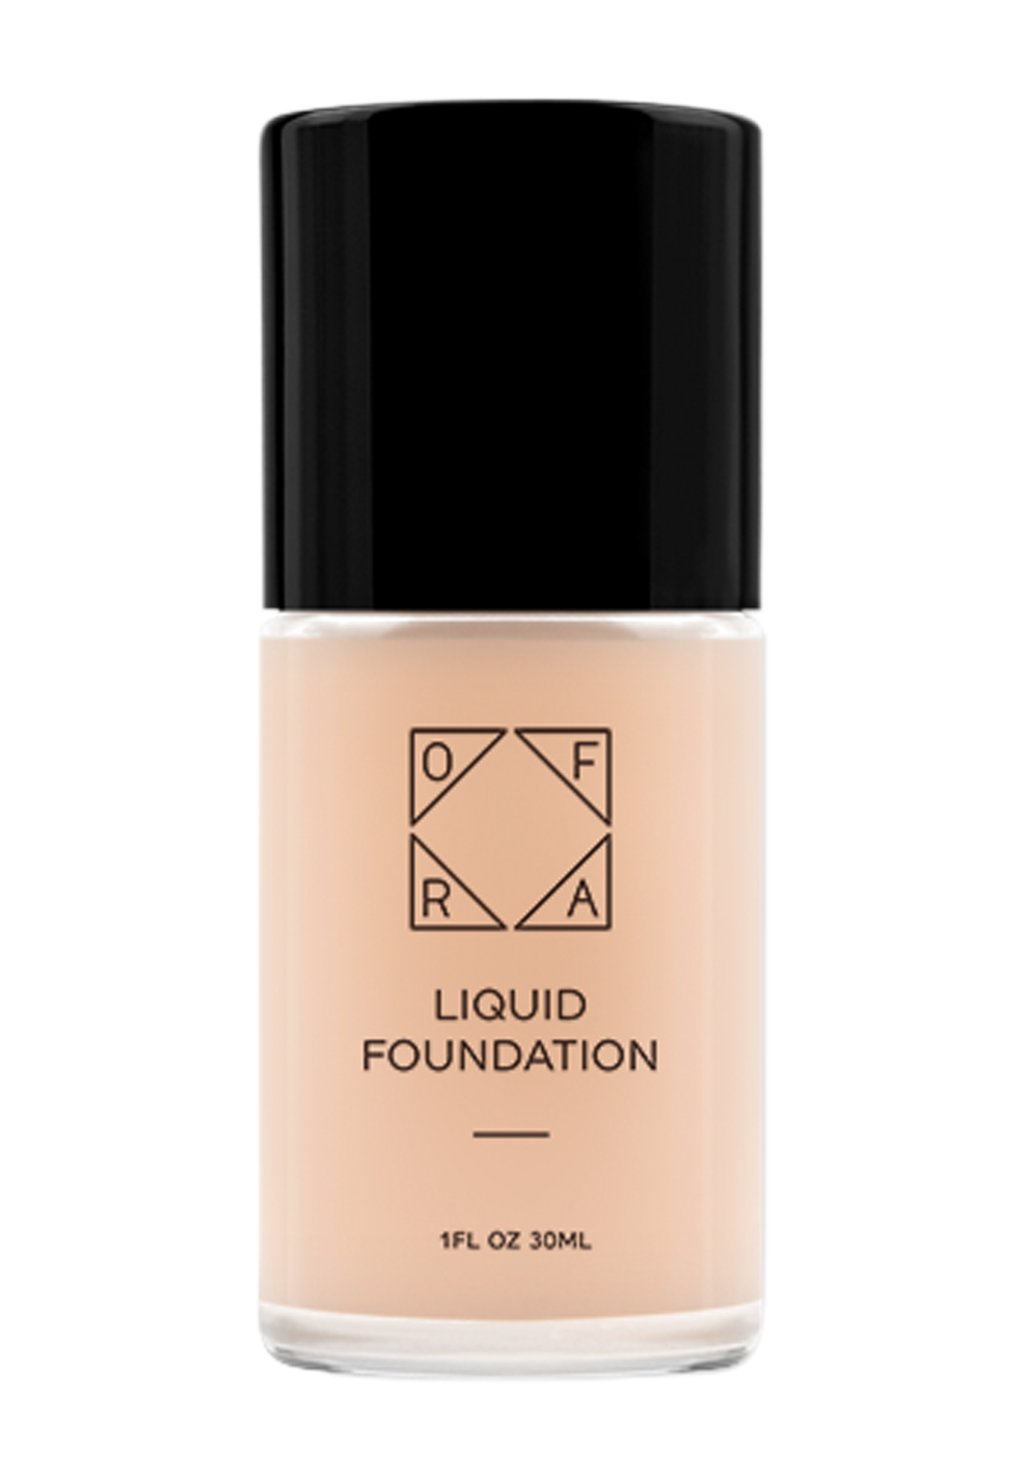 Тональный крем Liquid Foundation OFRA, цвет nude